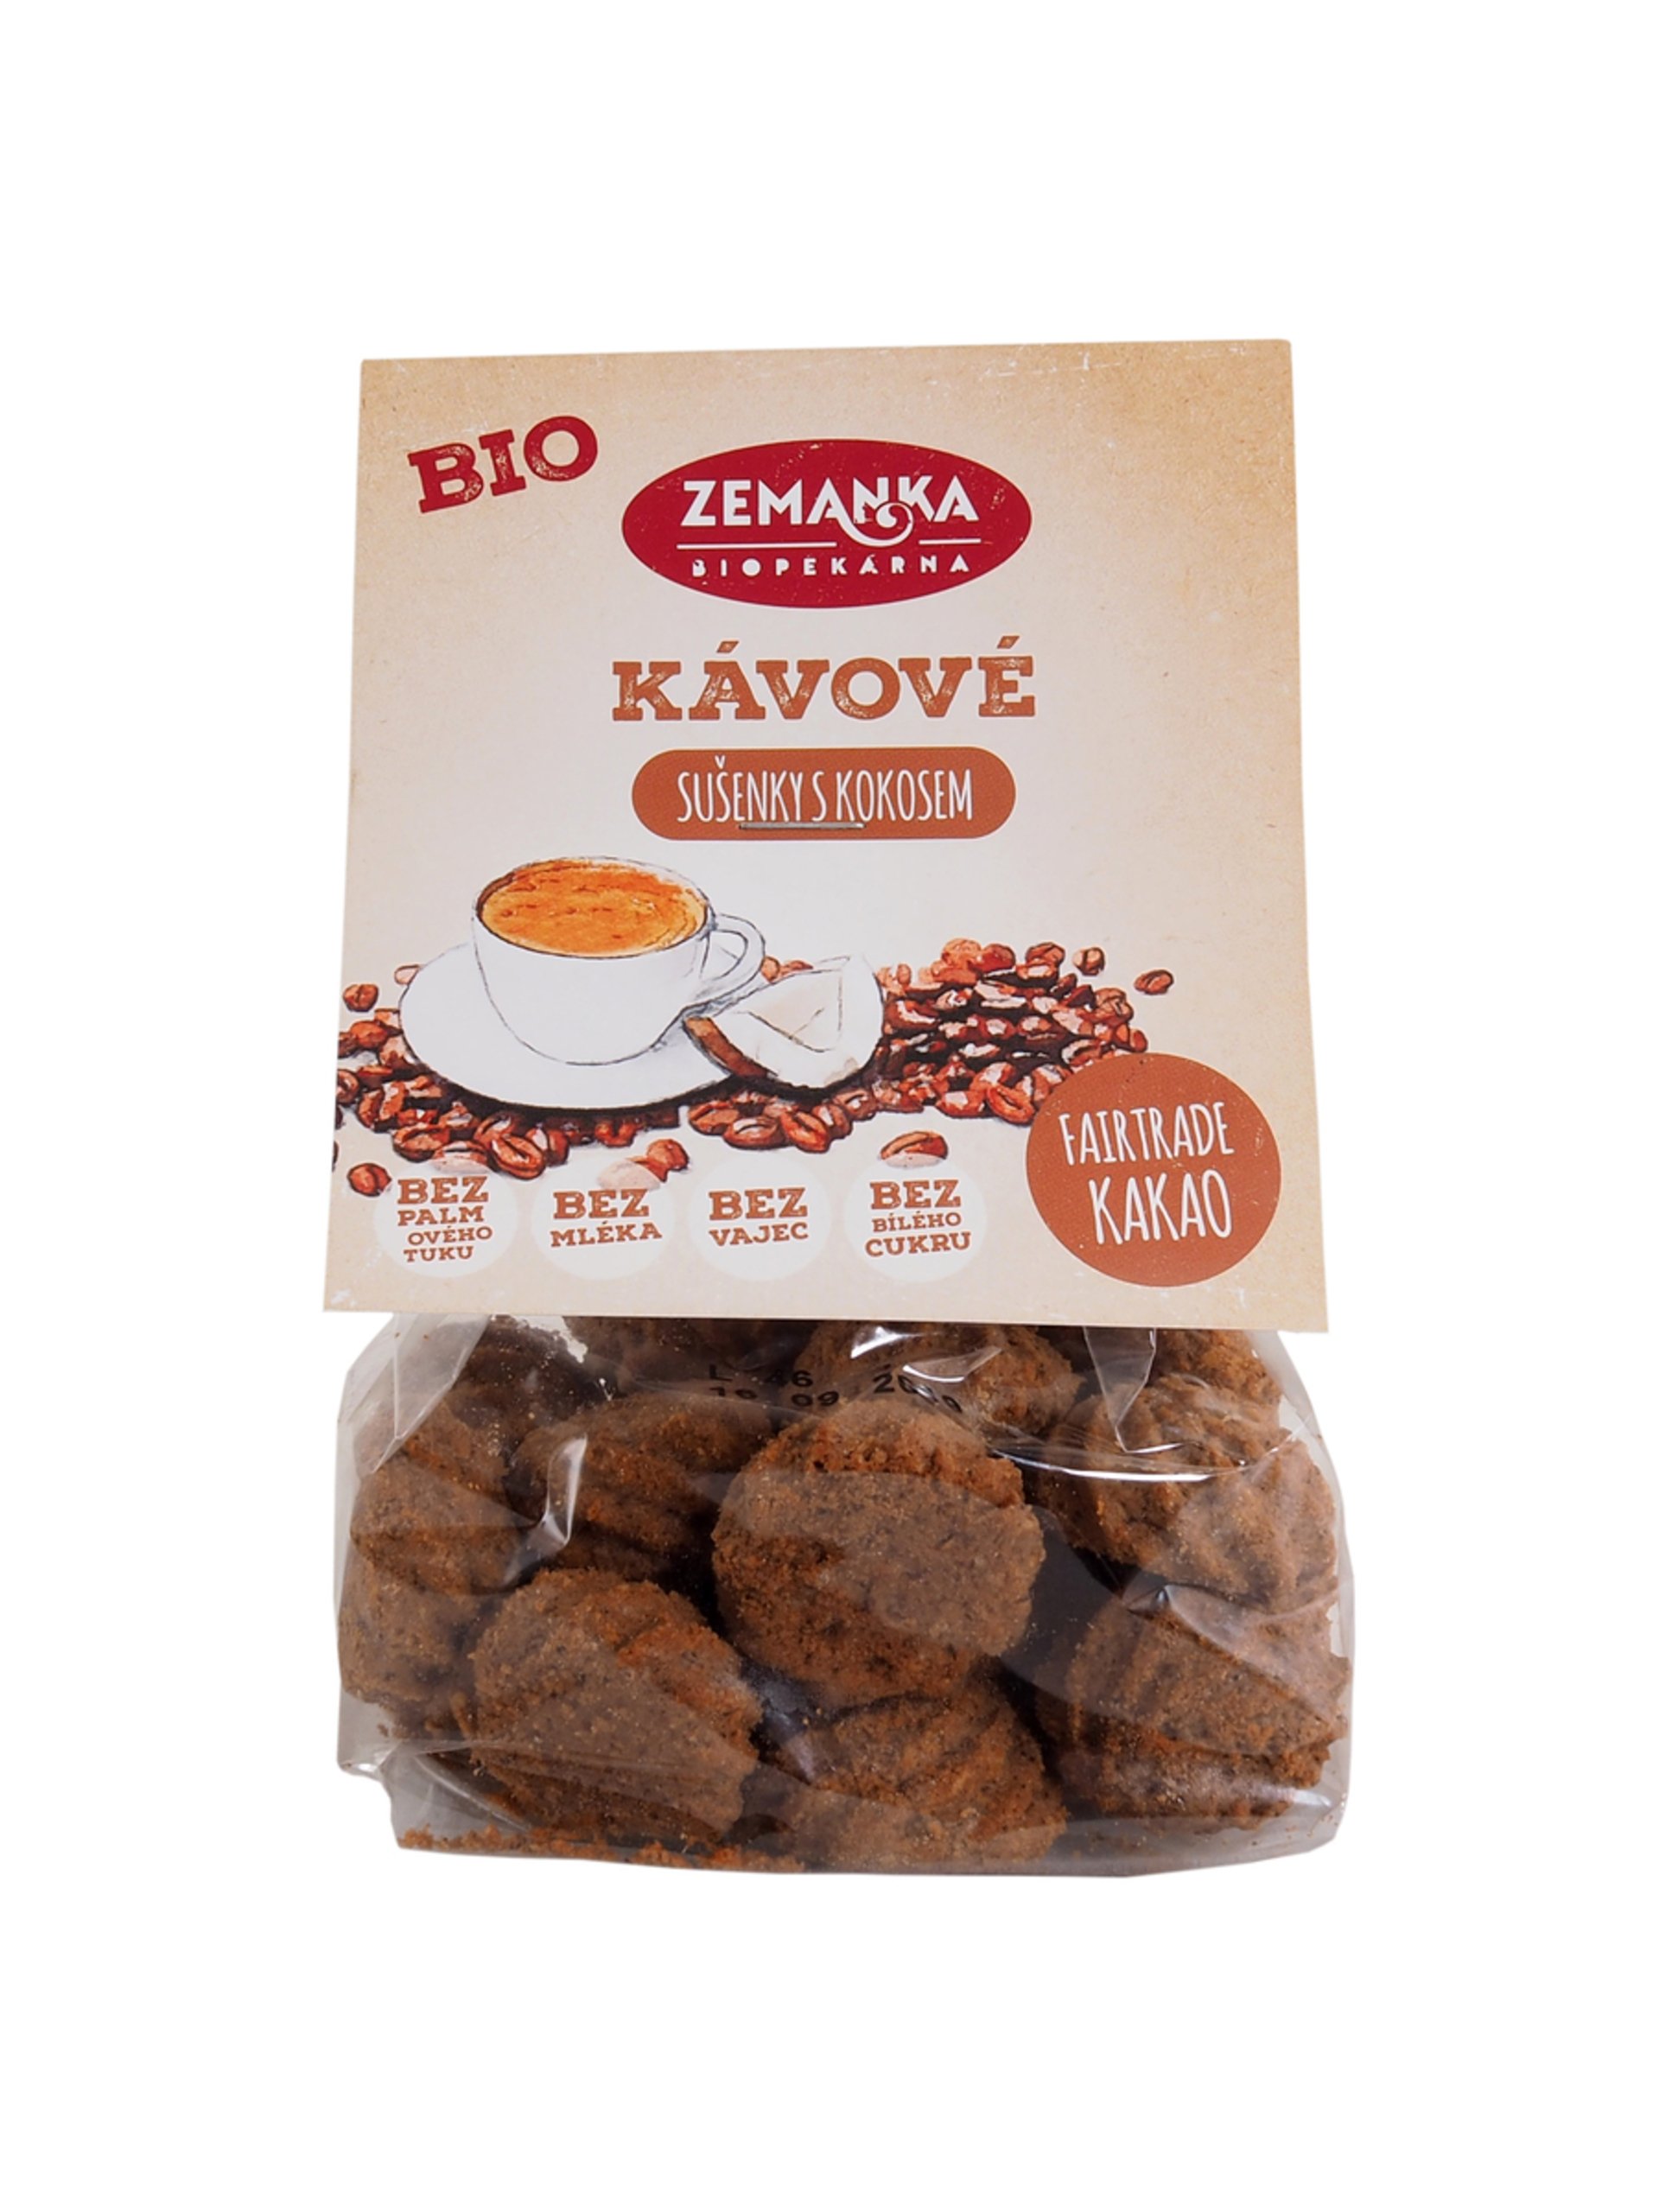 Biopekáreň Zemanka BIO Kávové sušienky s kokosom 100 g